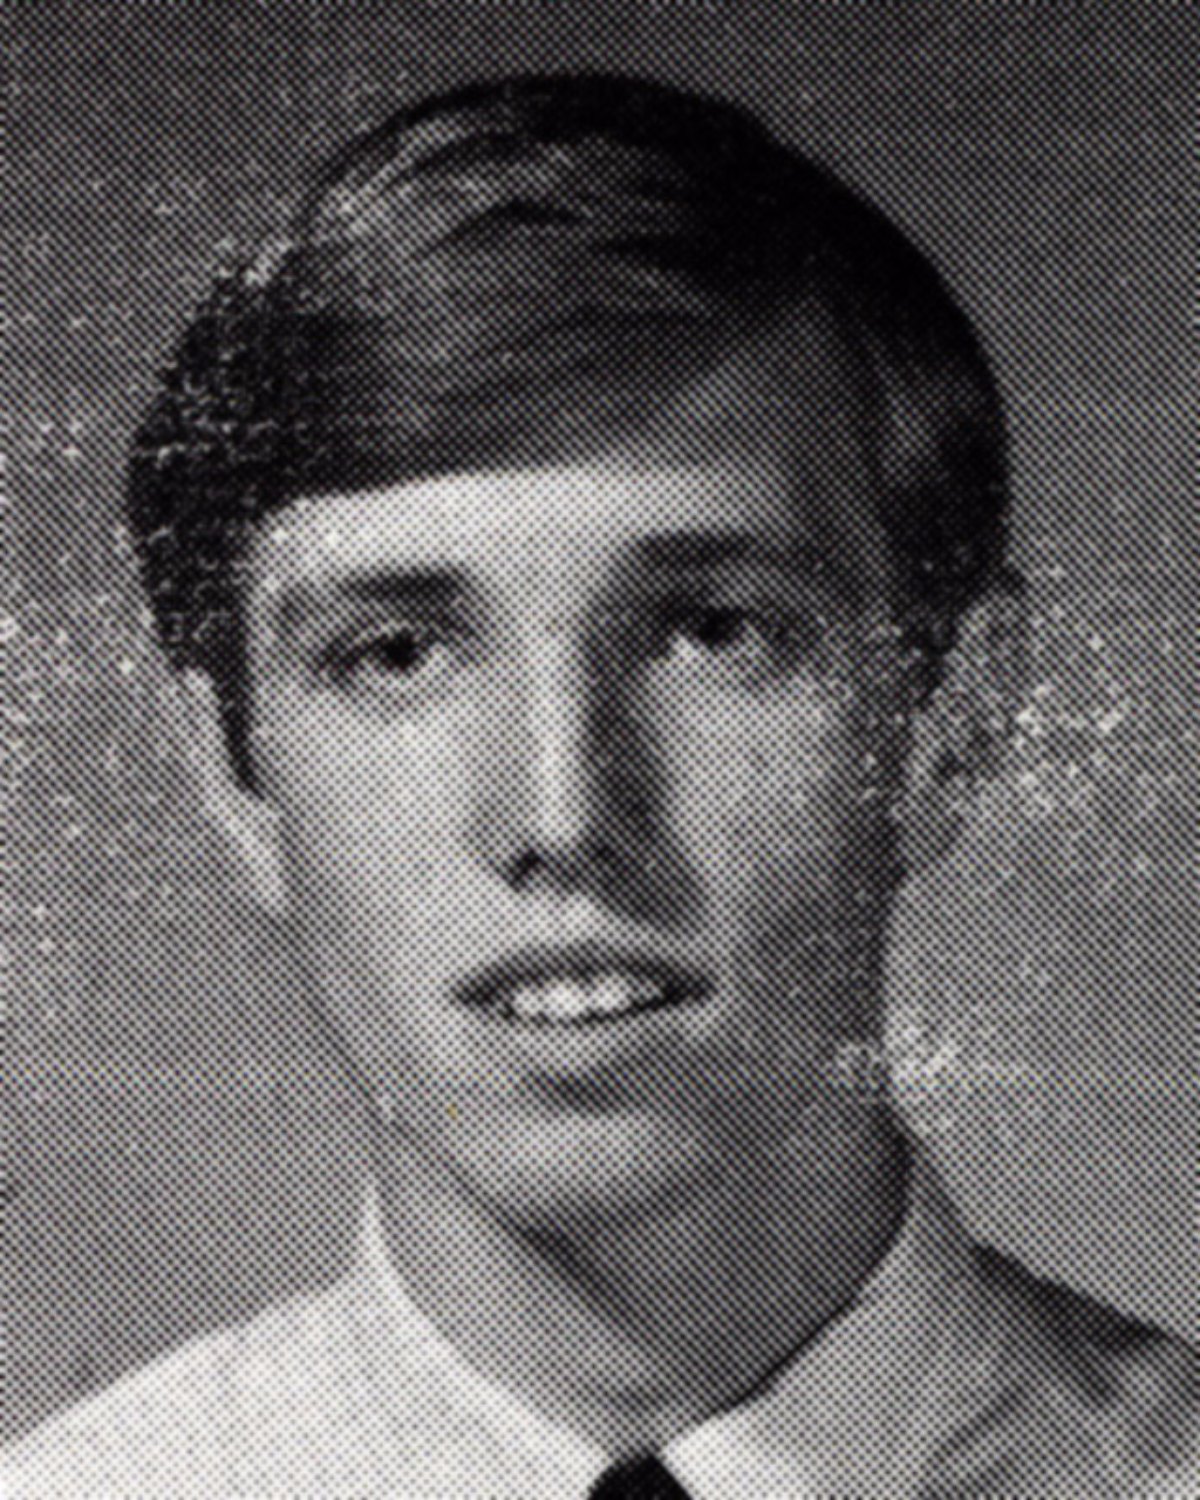 Tom Petty em sua juventude